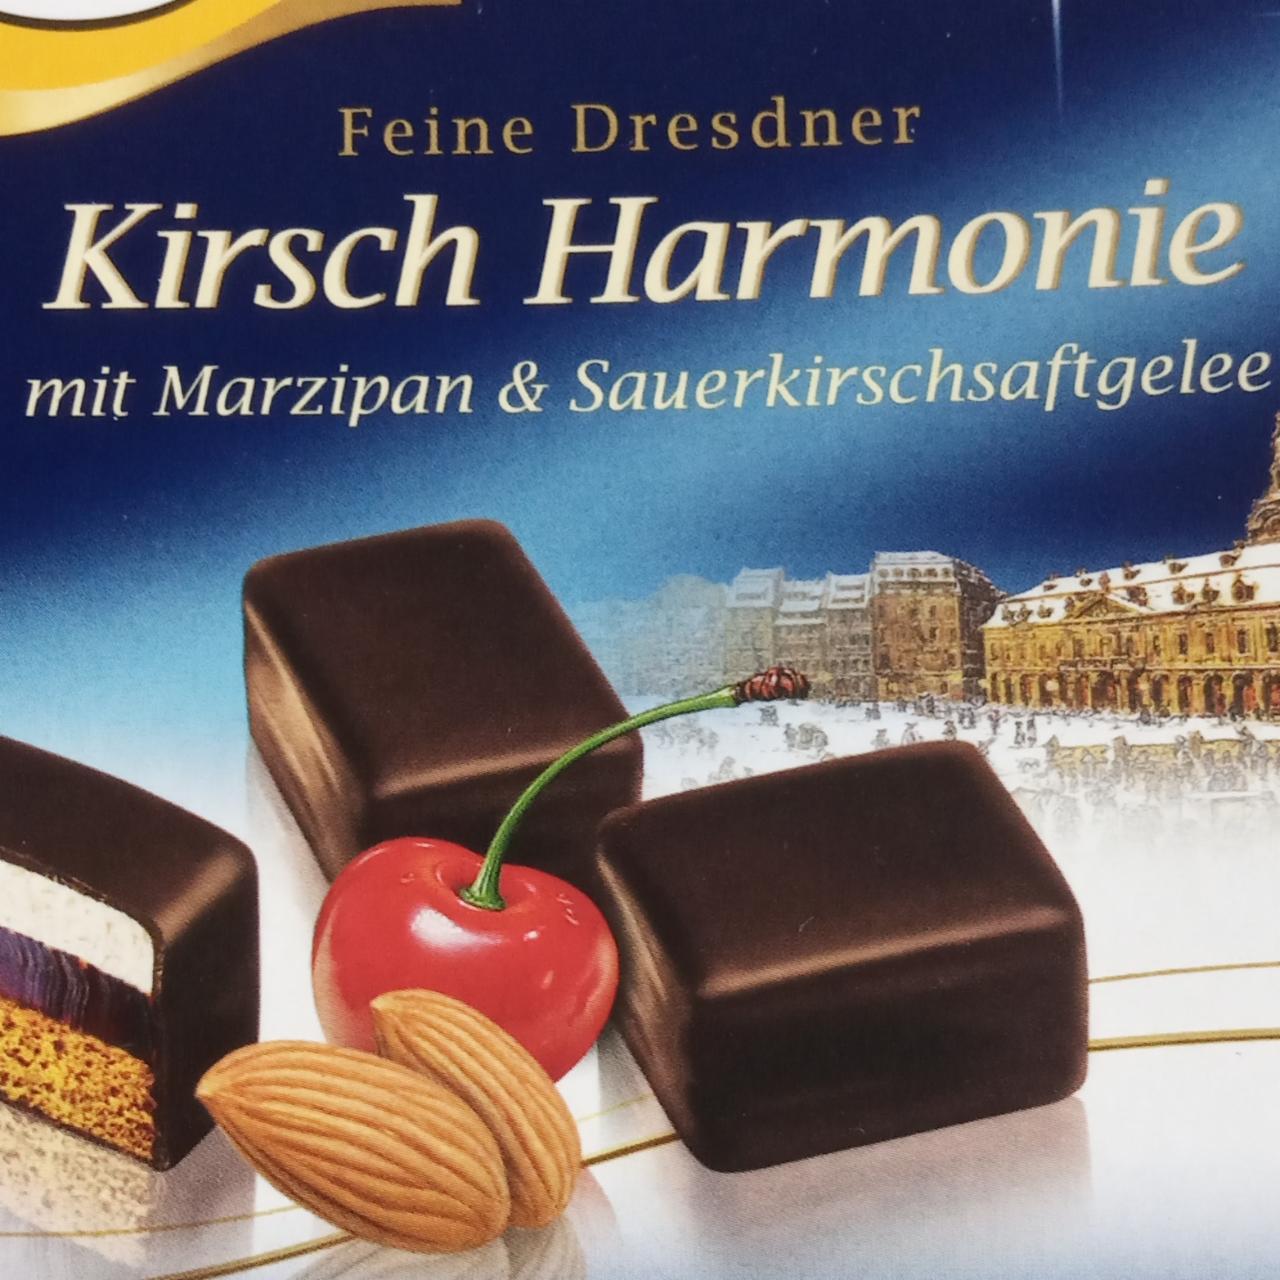 Fotografie - Kirsch Harmonie Feine Dresdner Dr. Quendt